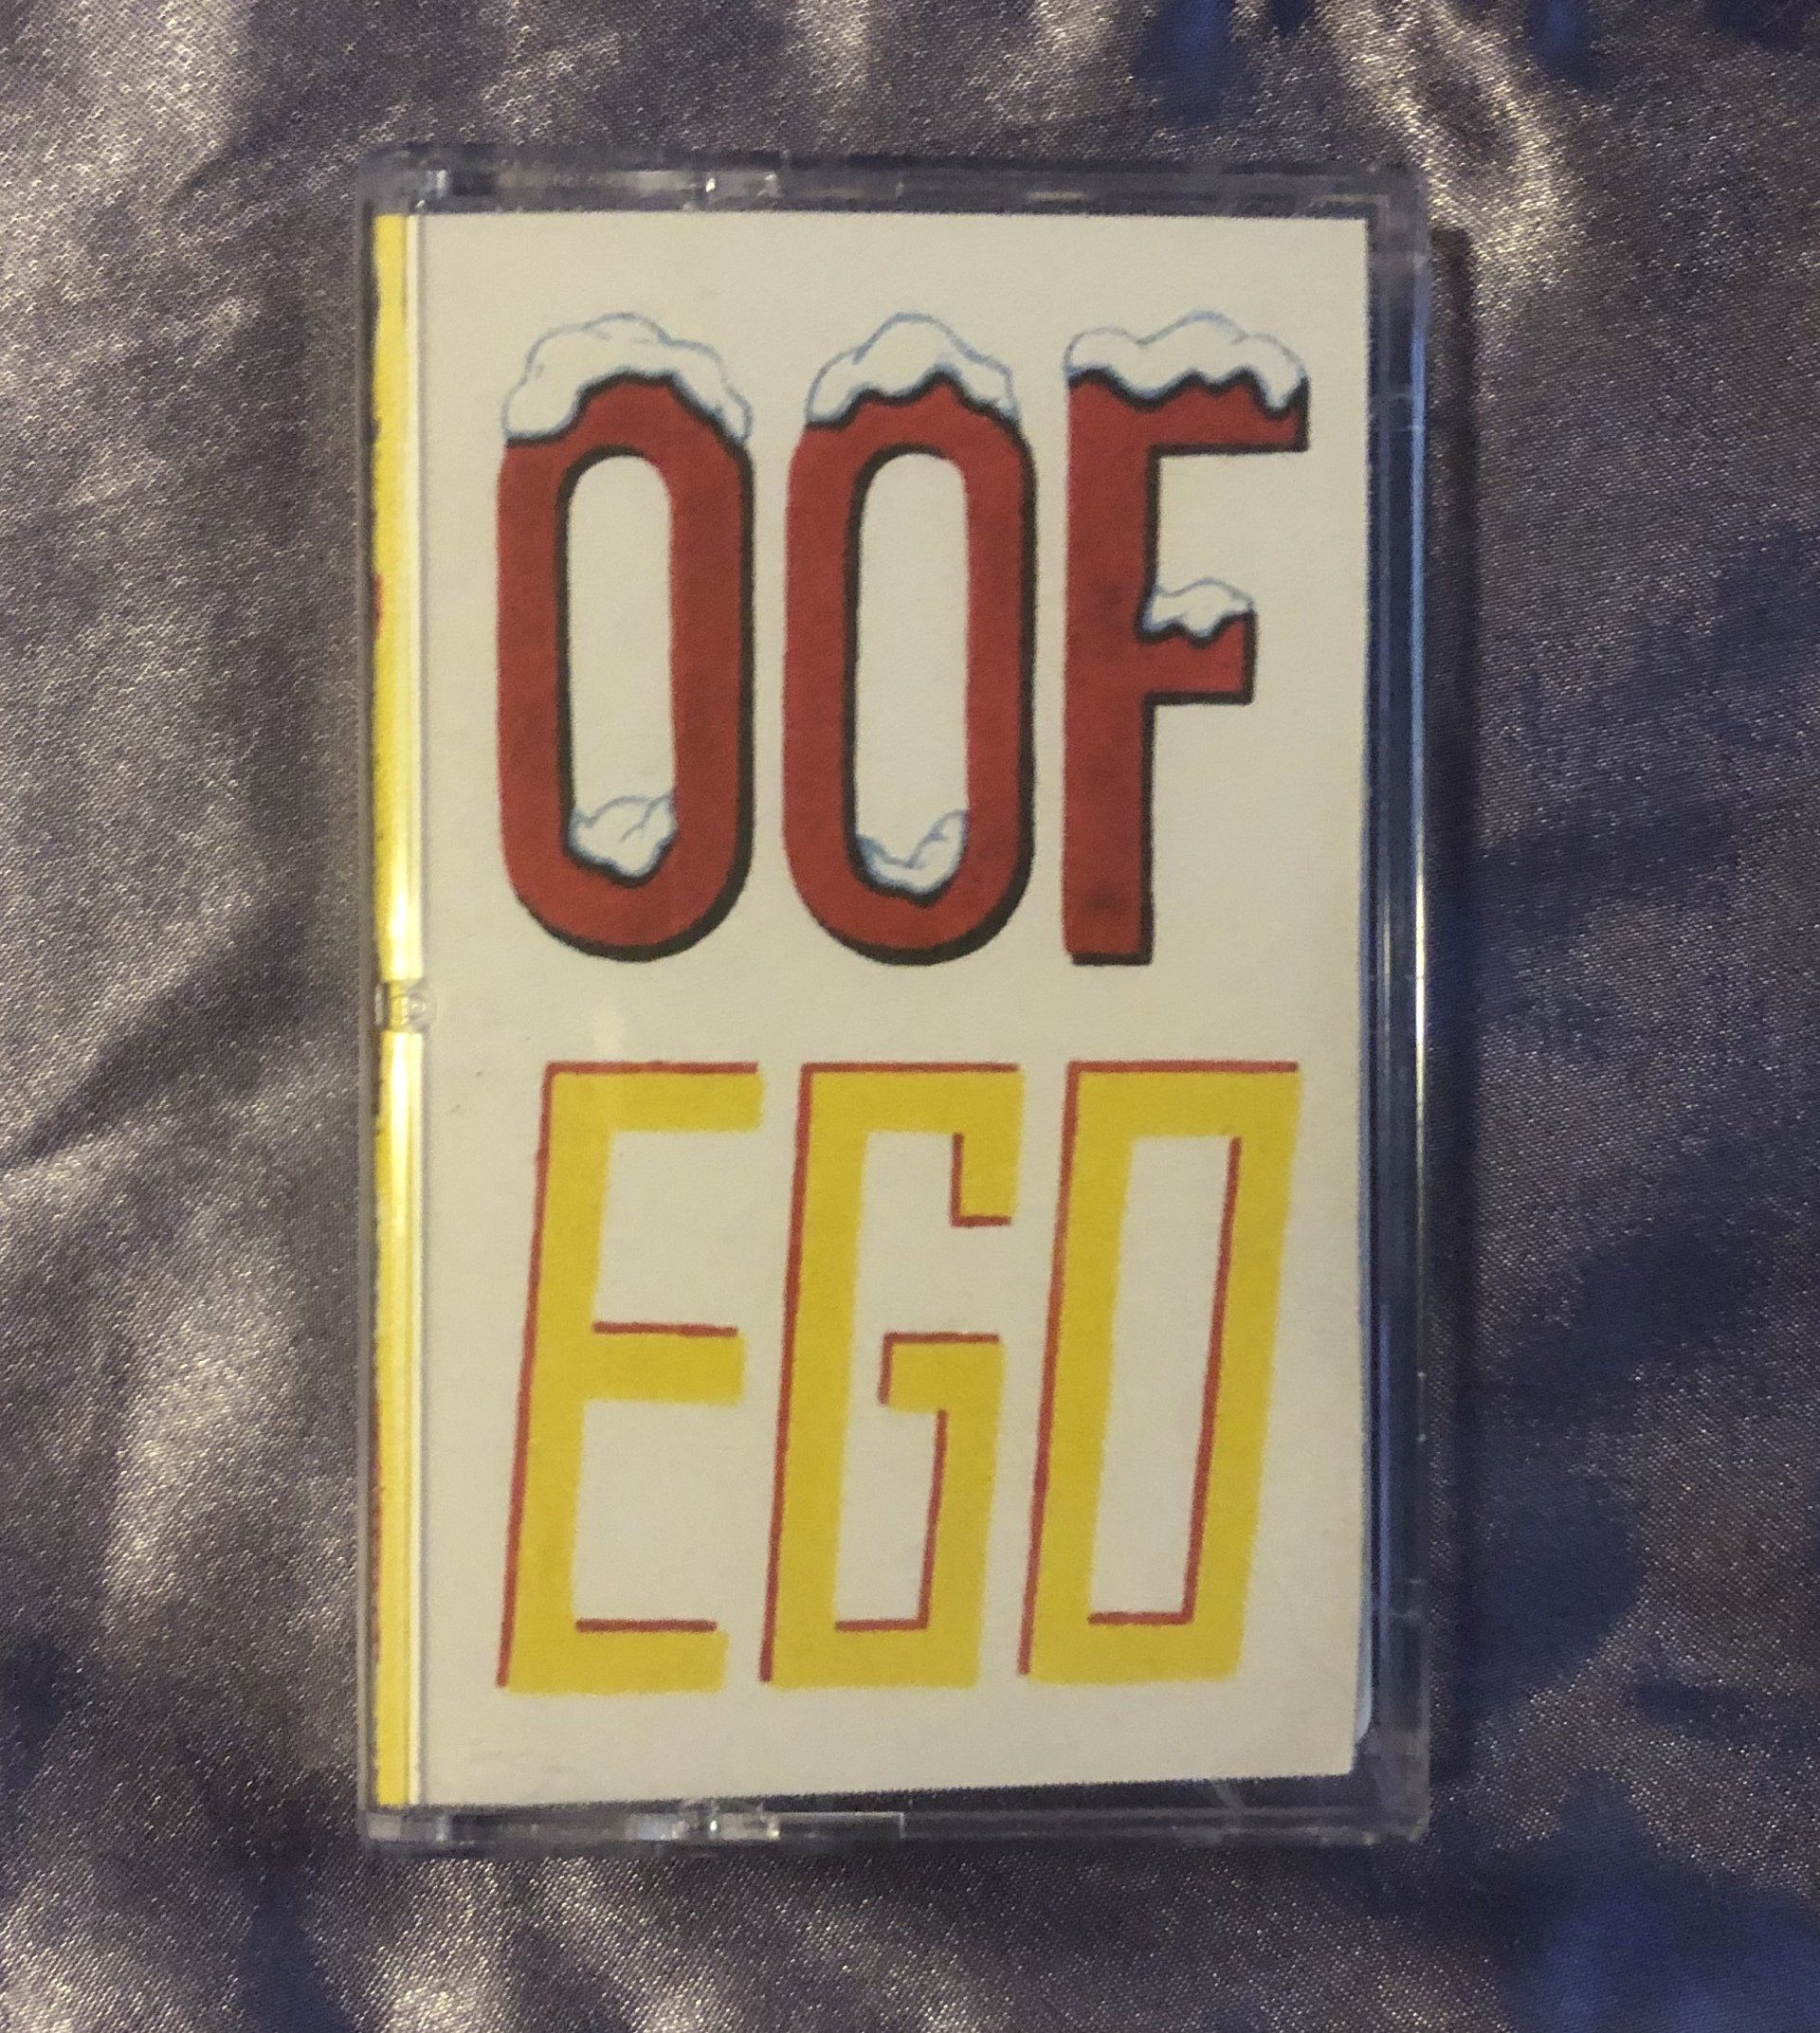 OOF - Ego